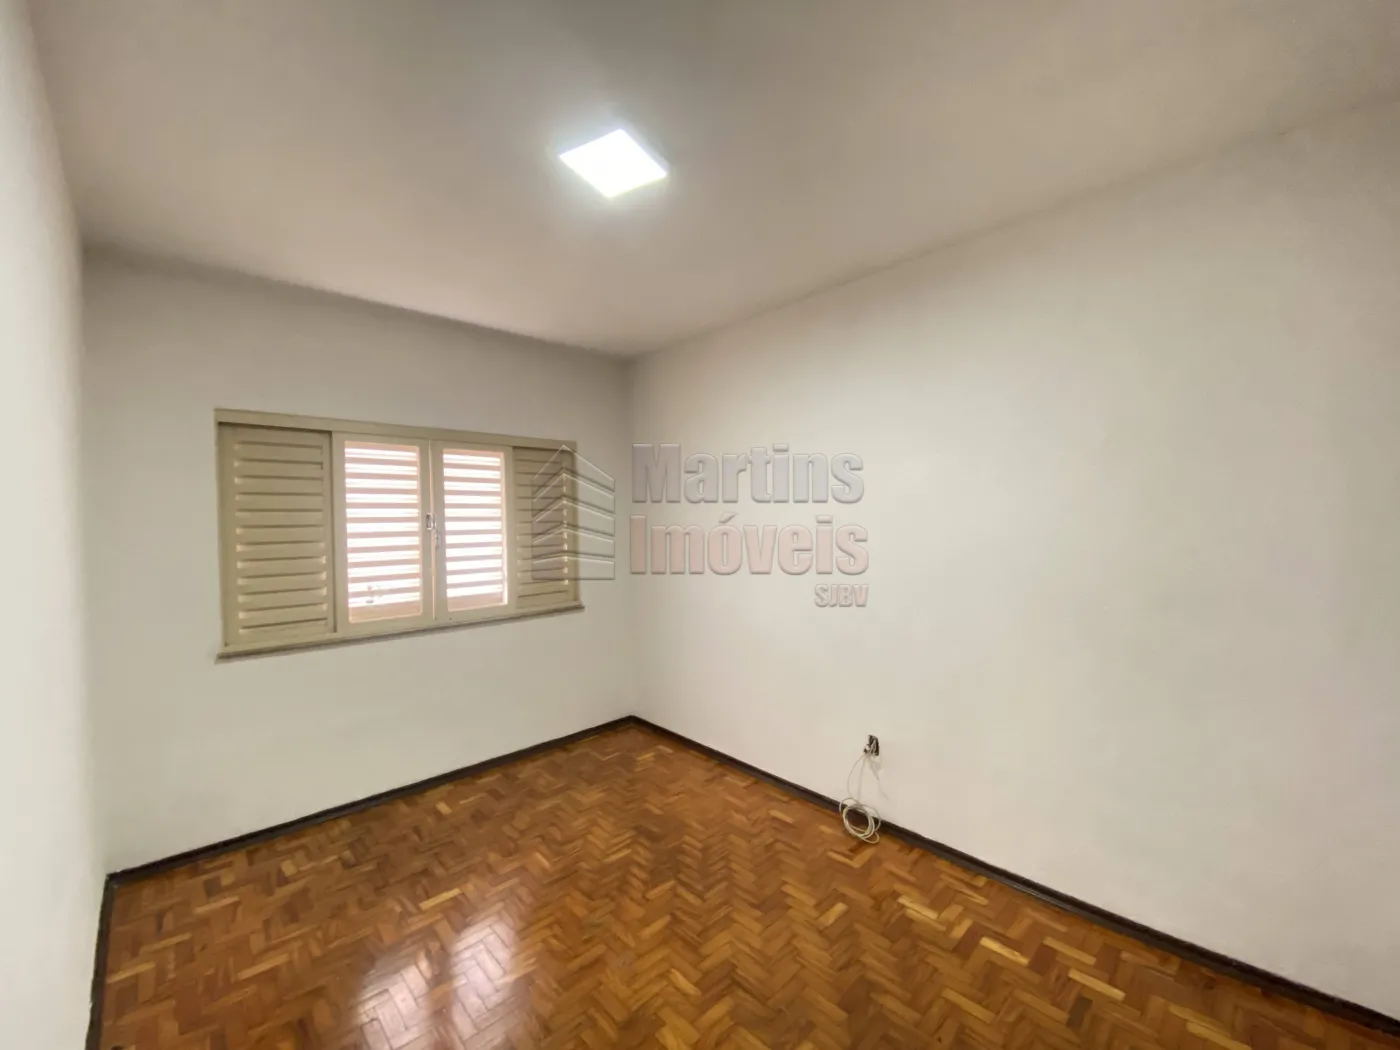 Alugar Casa / Padrão em São João da Boa Vista R$ 2.000,00 - Foto 13